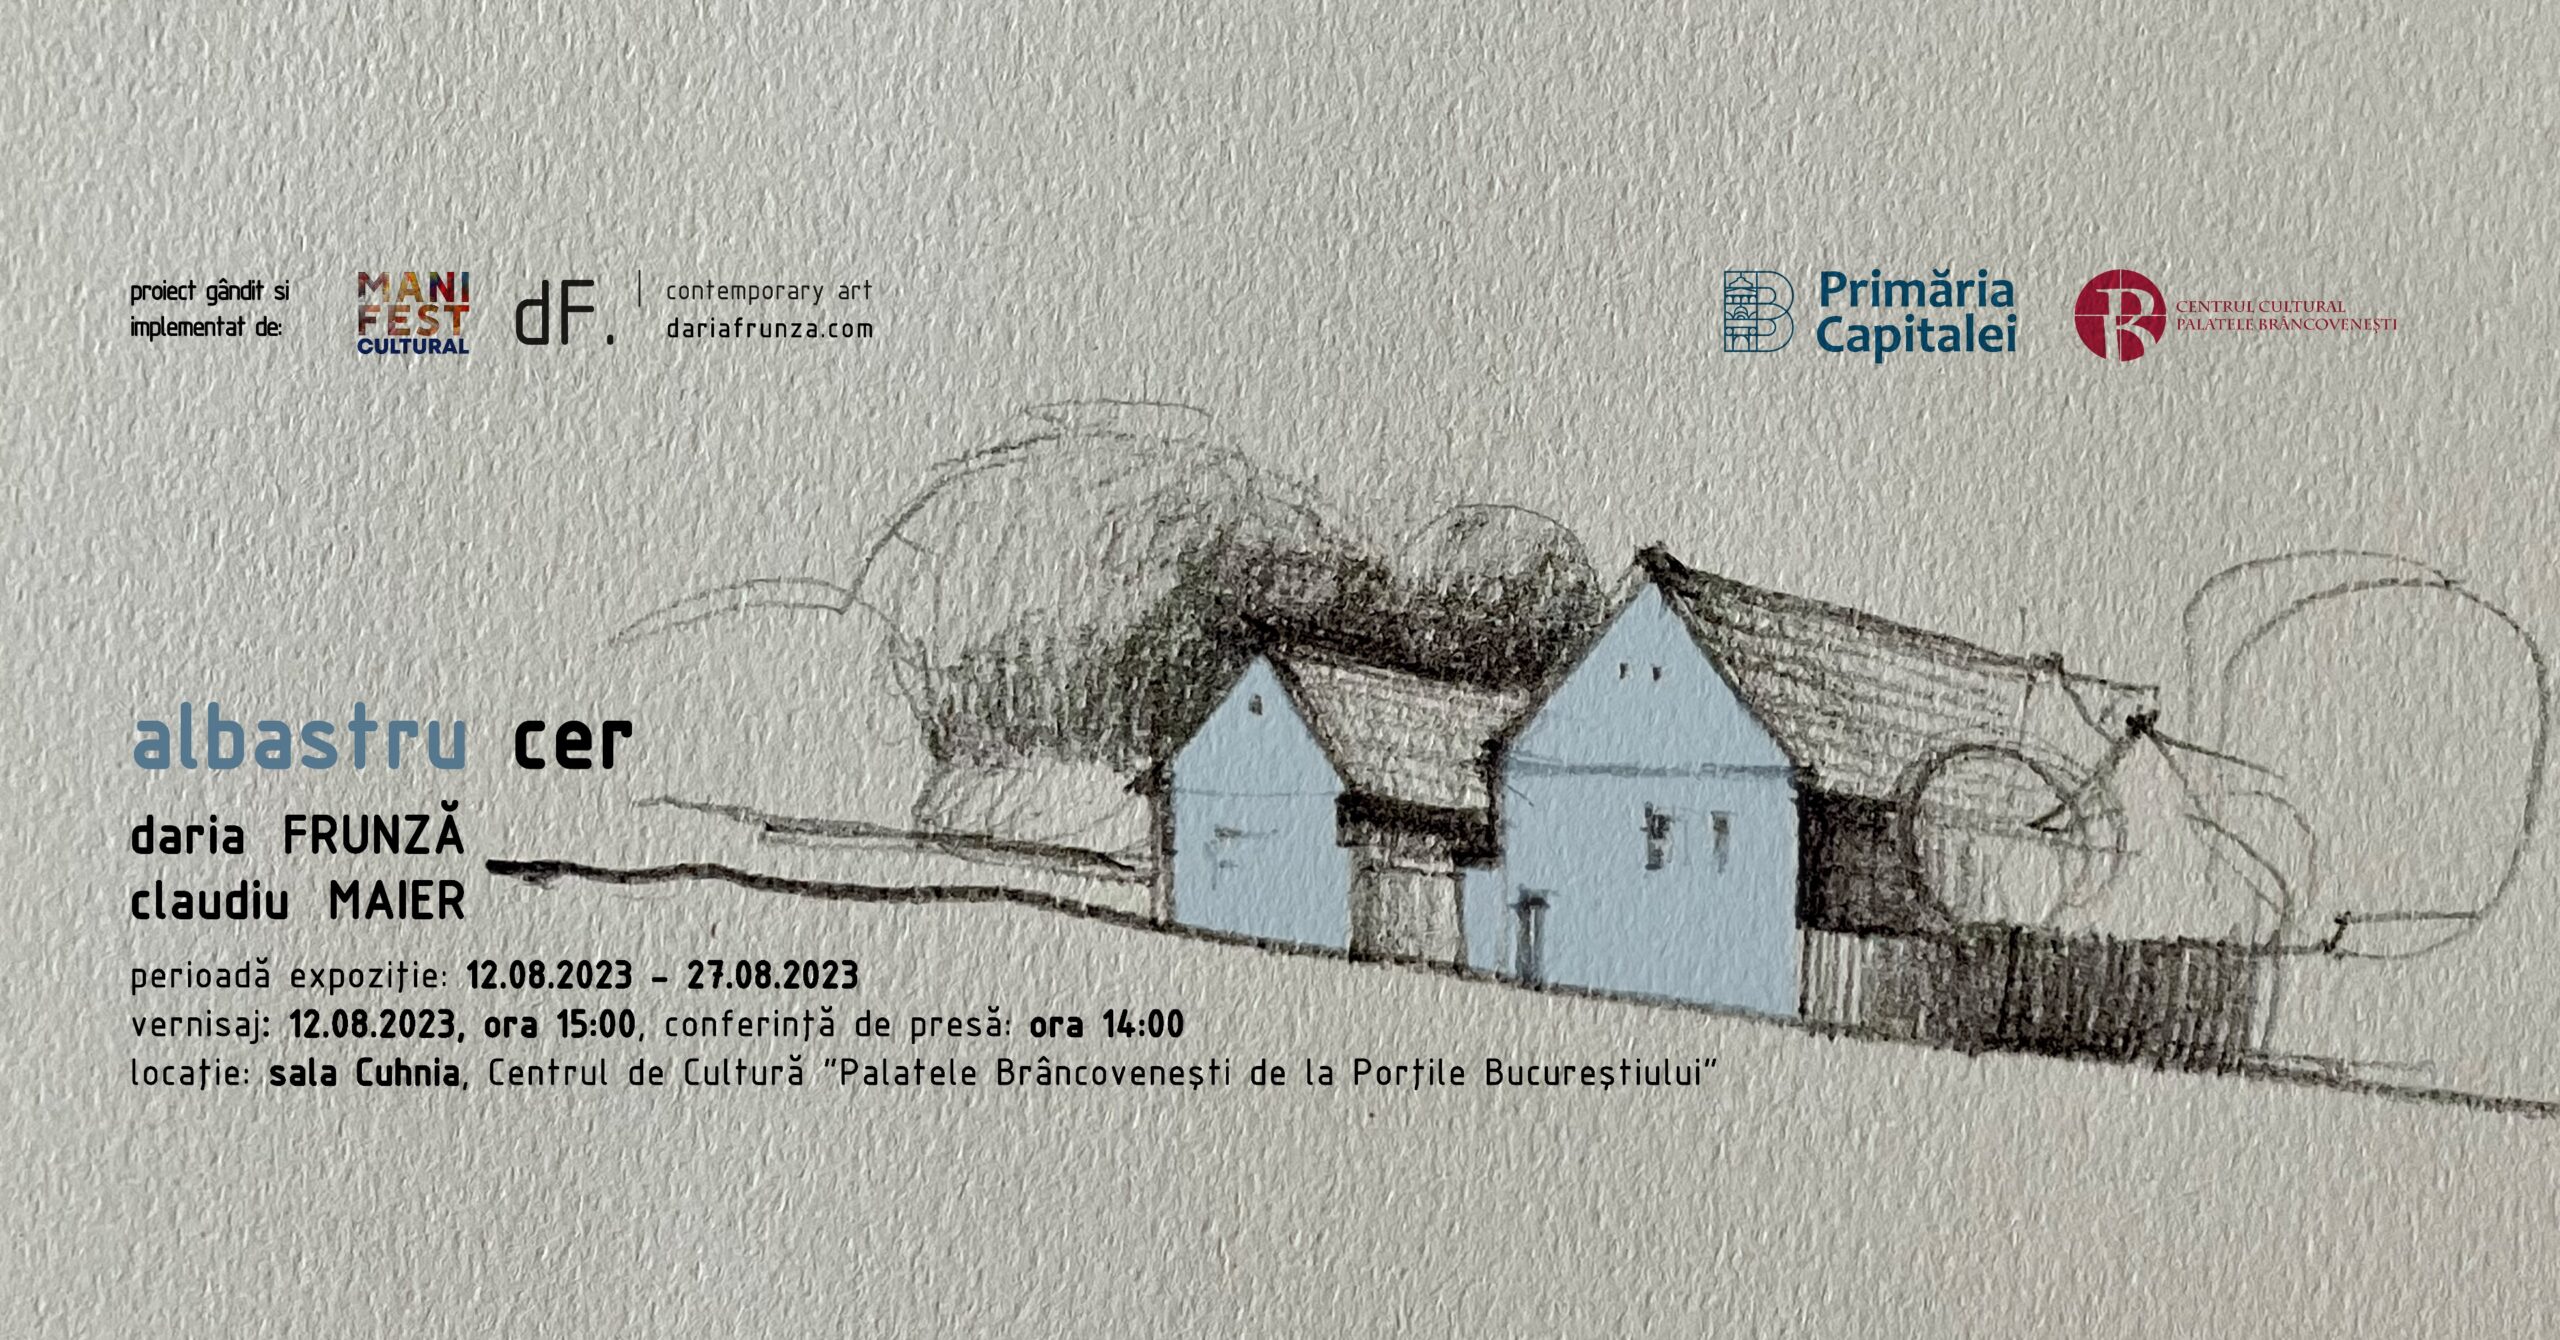 Proiectul “albastru cer” găzduit la Palatele Brâncovenești de la Mogoșoaia – 12-27 august 2023